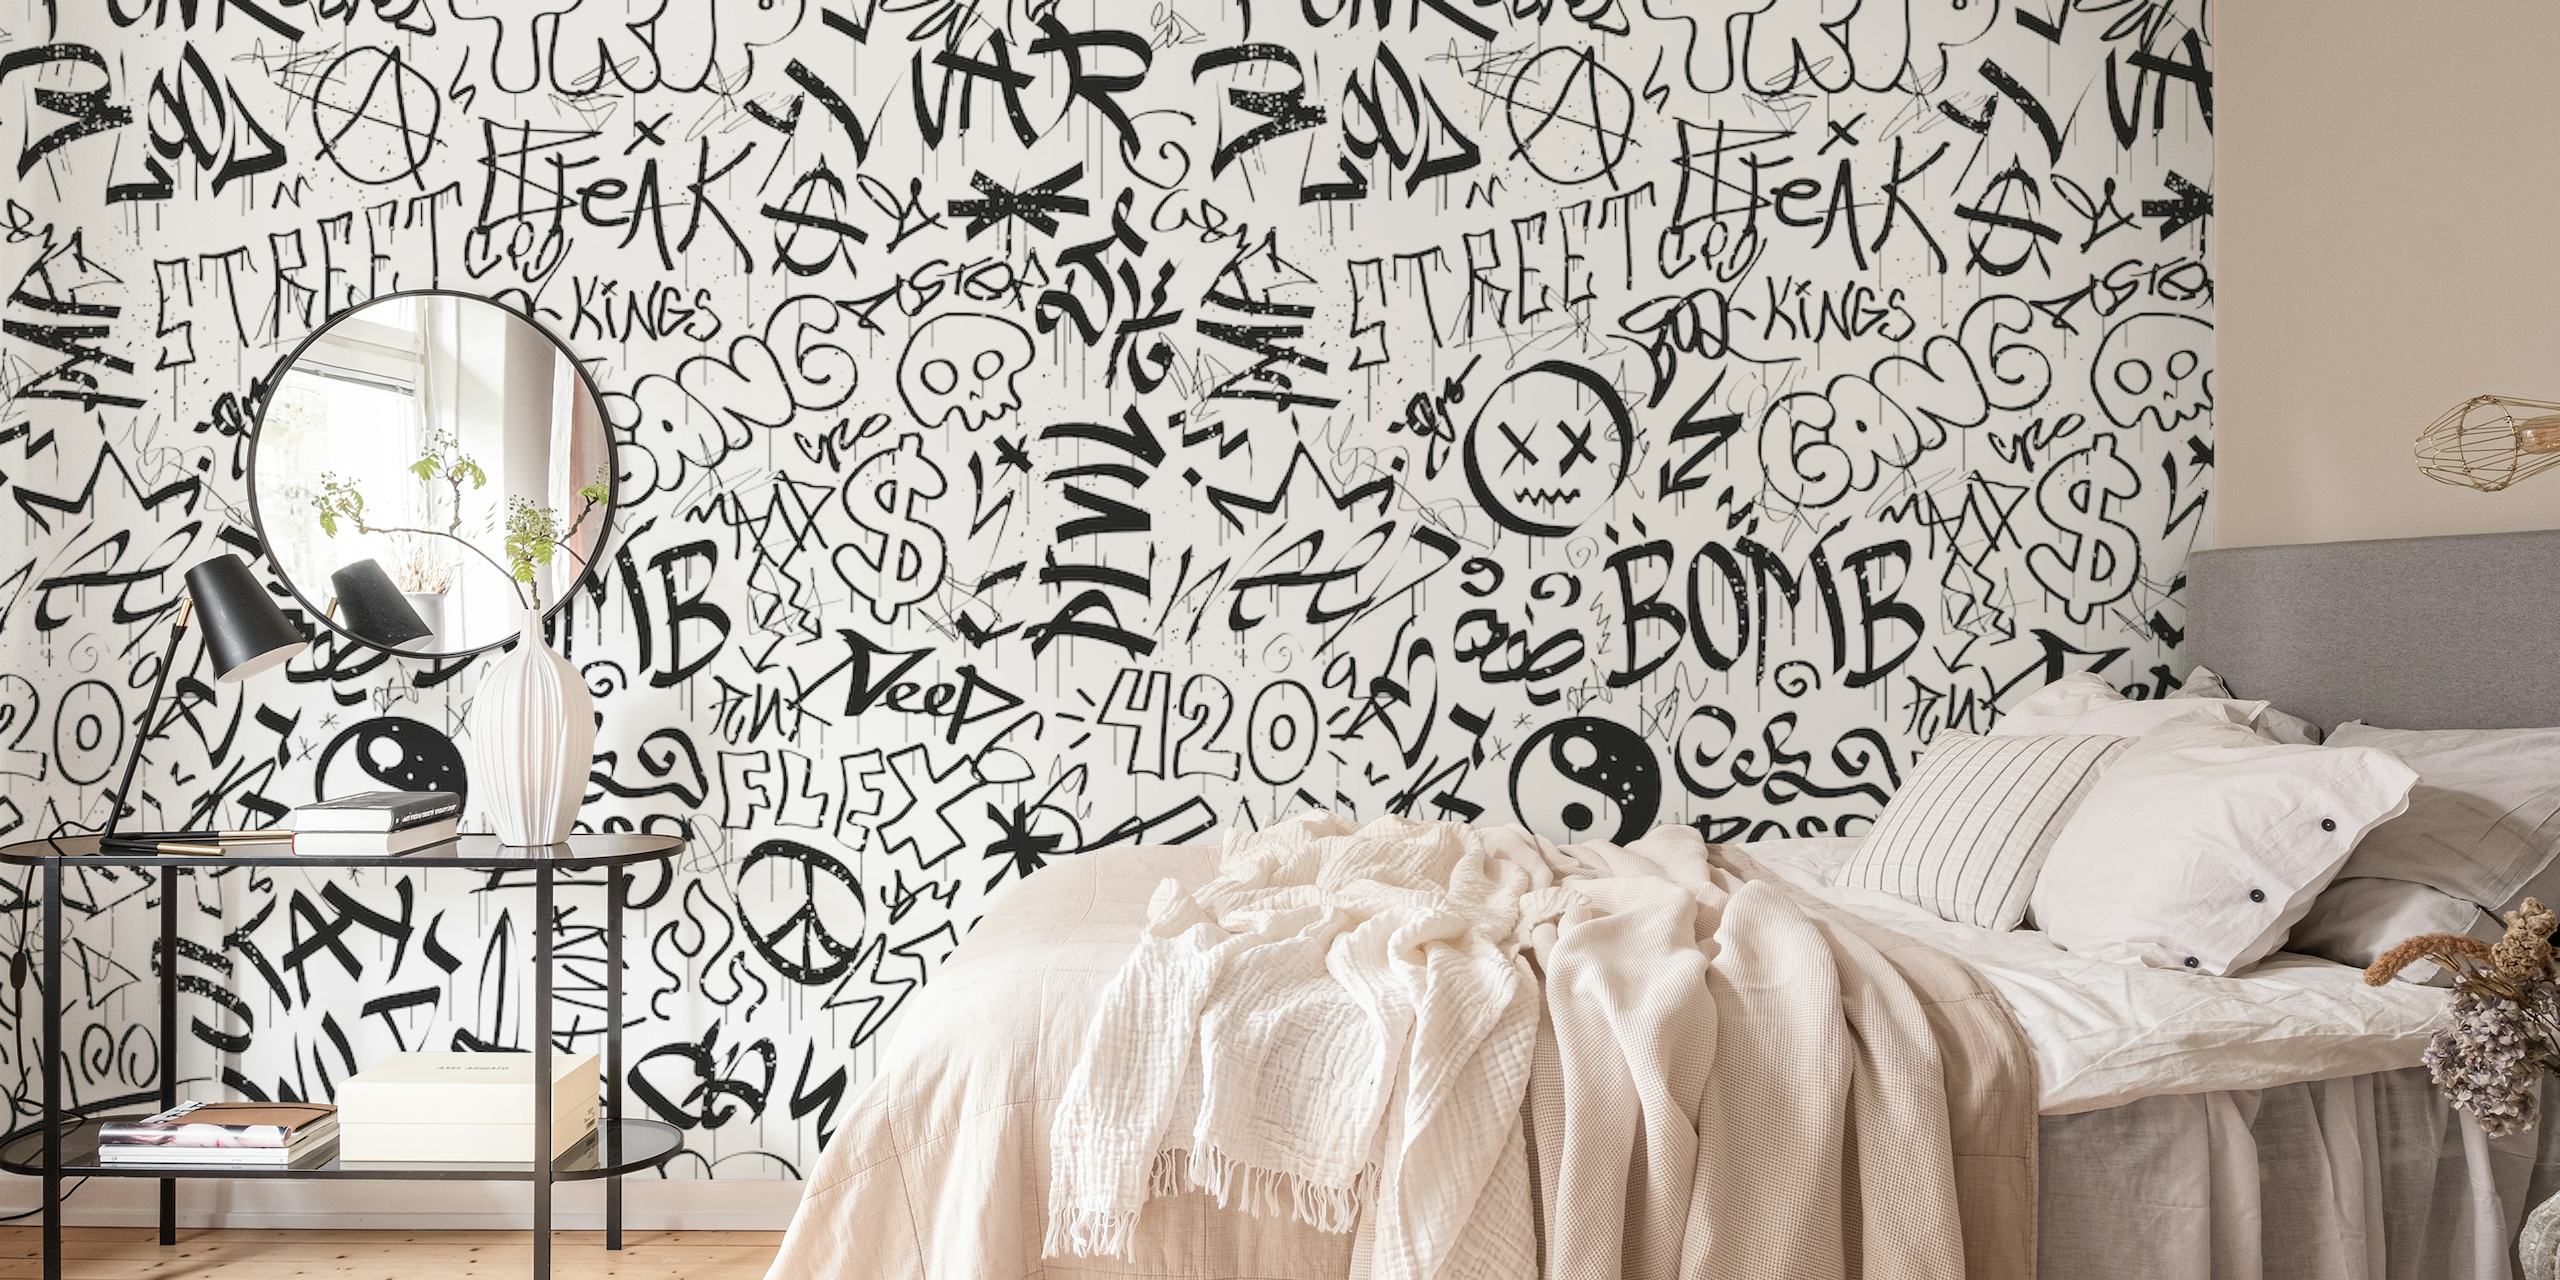 Sort/hvid vægmaleri i graffiti-stil med forskellige tags og karakterer.